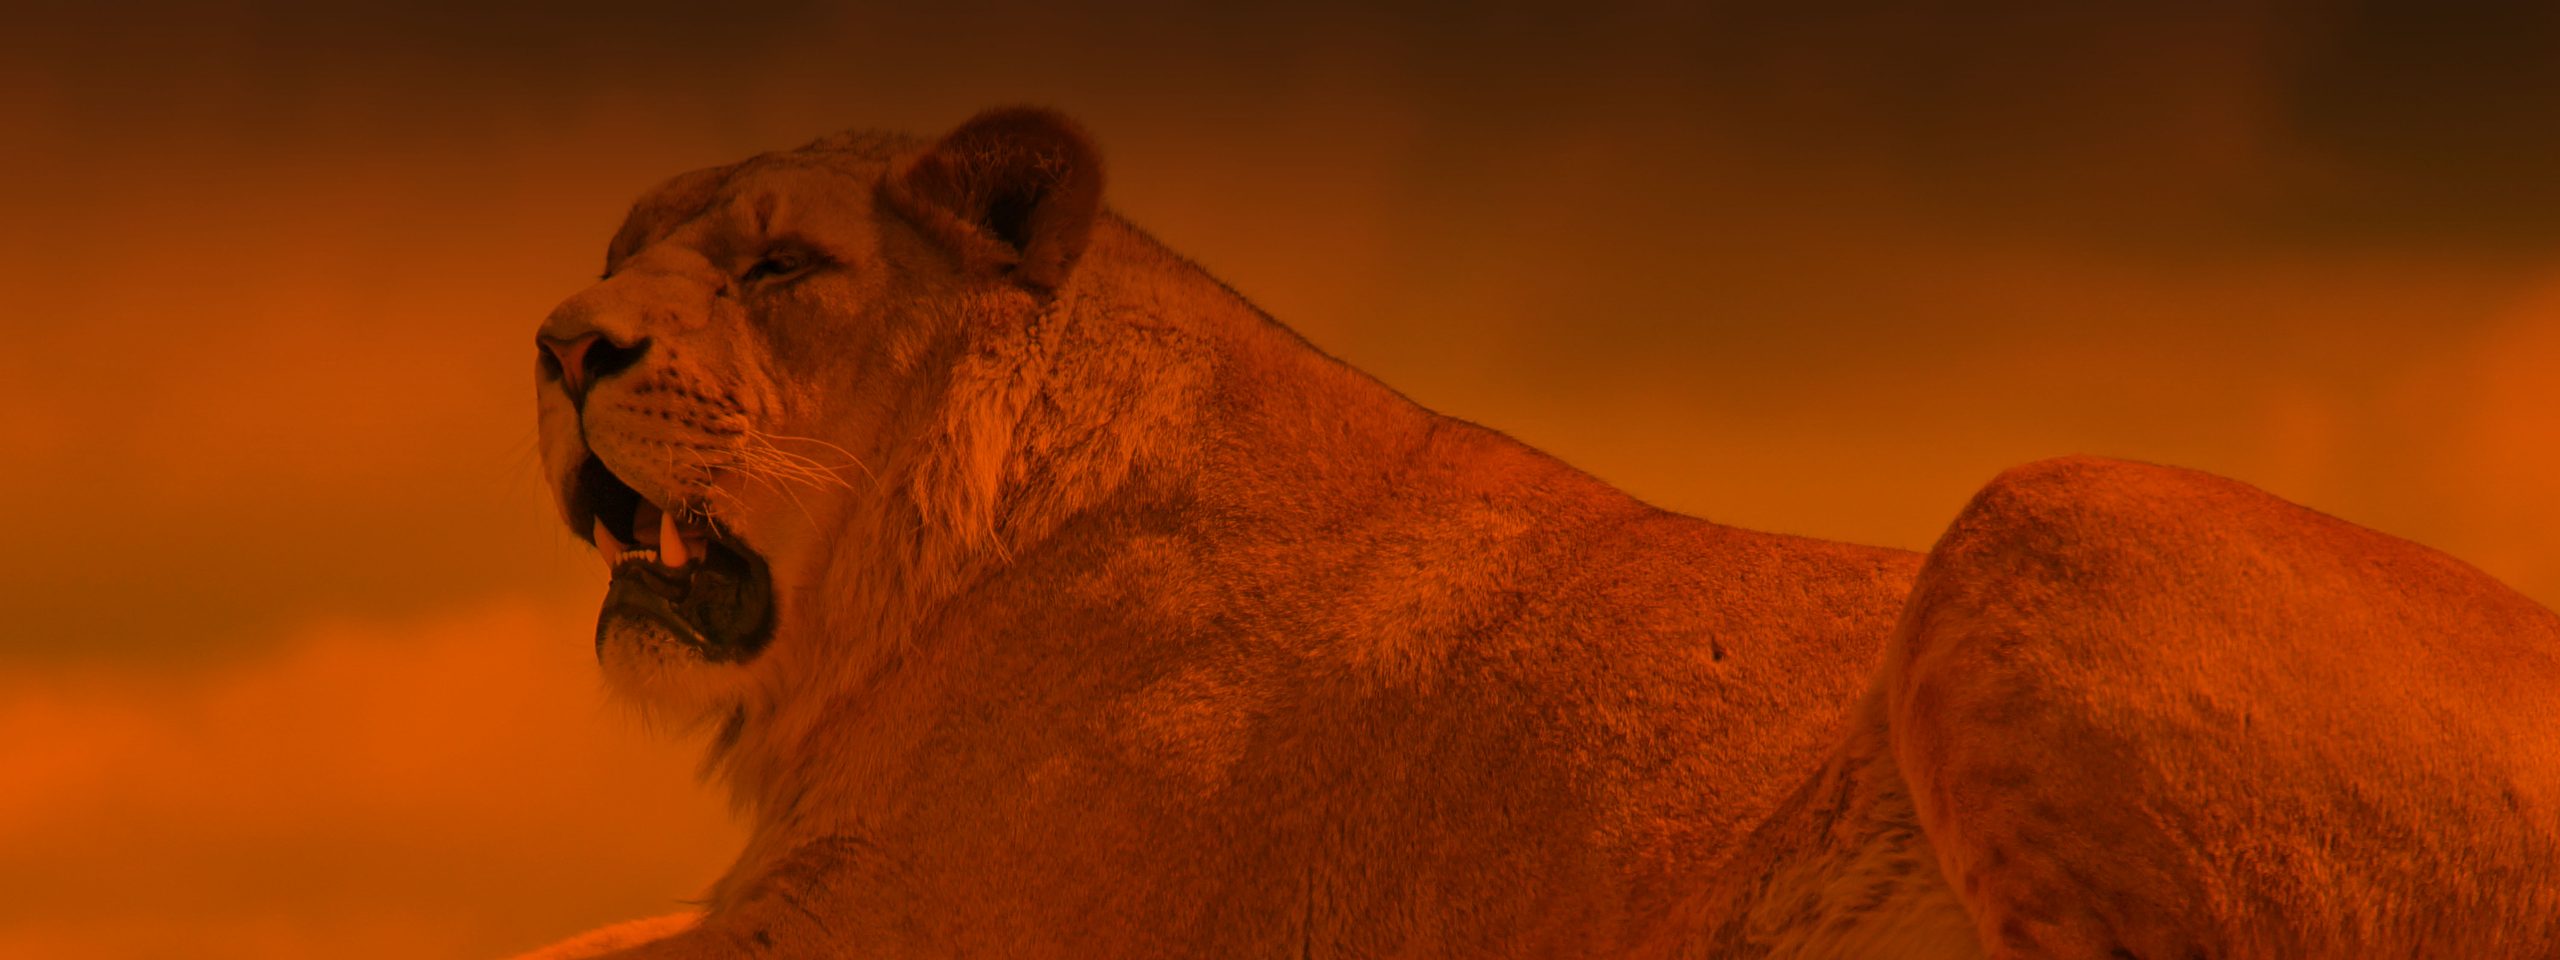 african lion safari in niagara falls